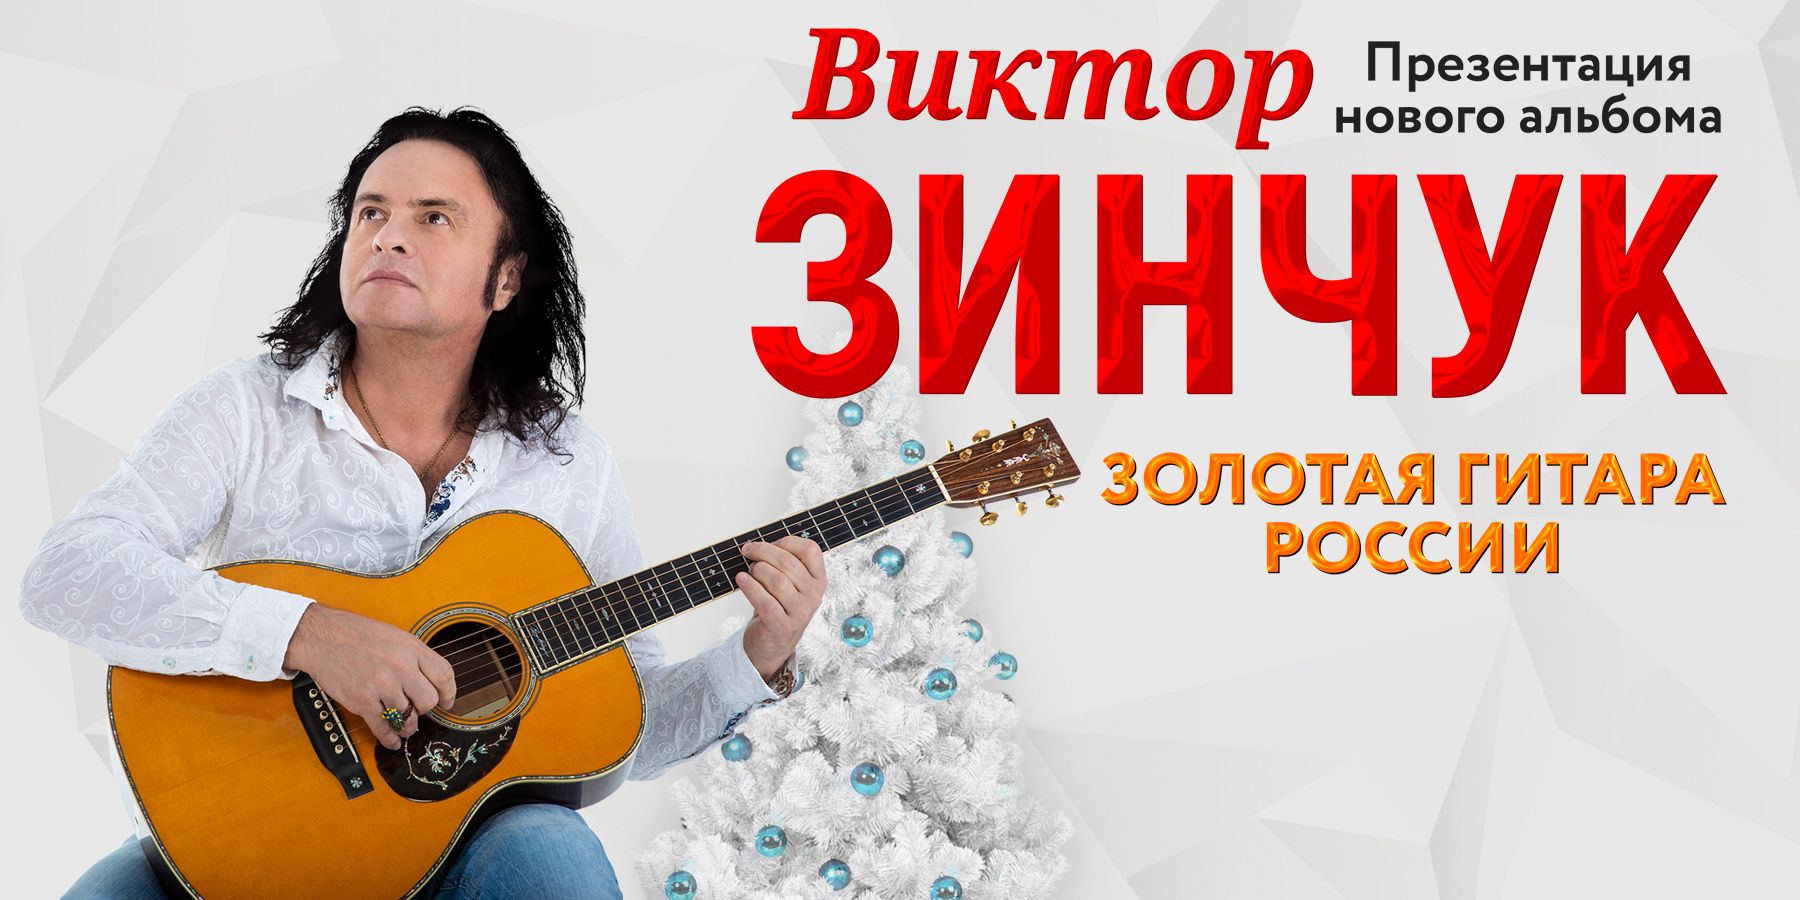 Виктор Зинчук "Золотая гитара России"